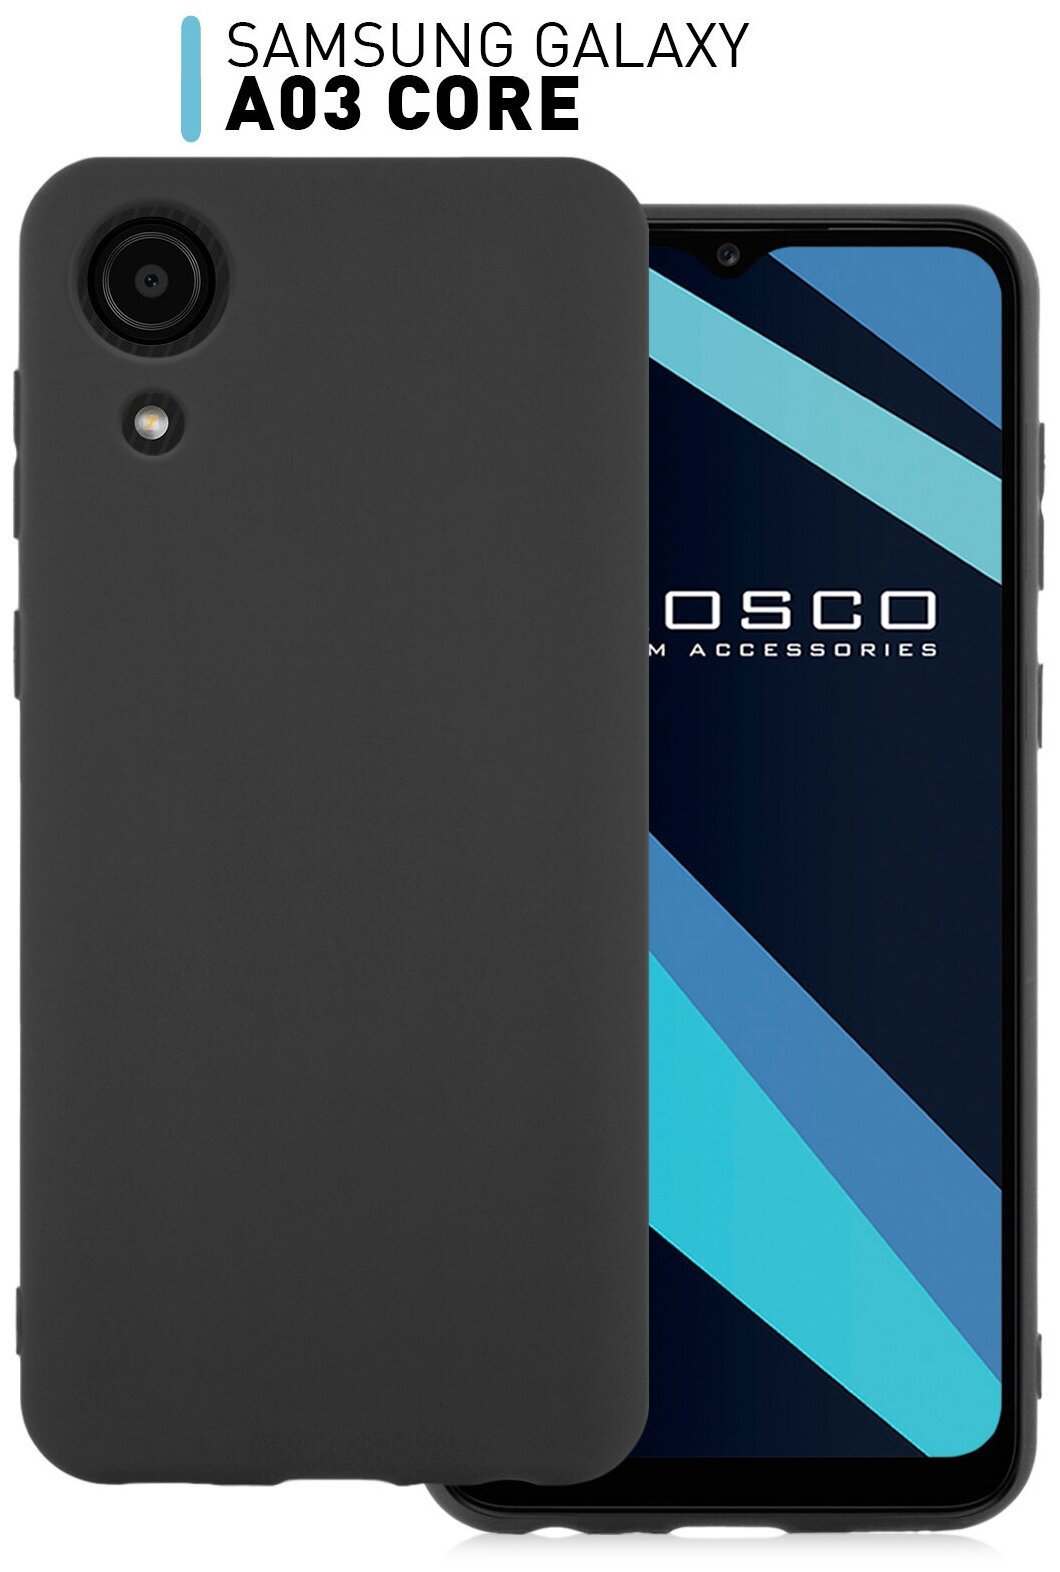 Чехол-накладка для Samsung Galaxy A03 Core (Самсунг Галакси А03 Кор) тонкий из силикона, ROSCO матовое покрытие, защита модуля камер, черный